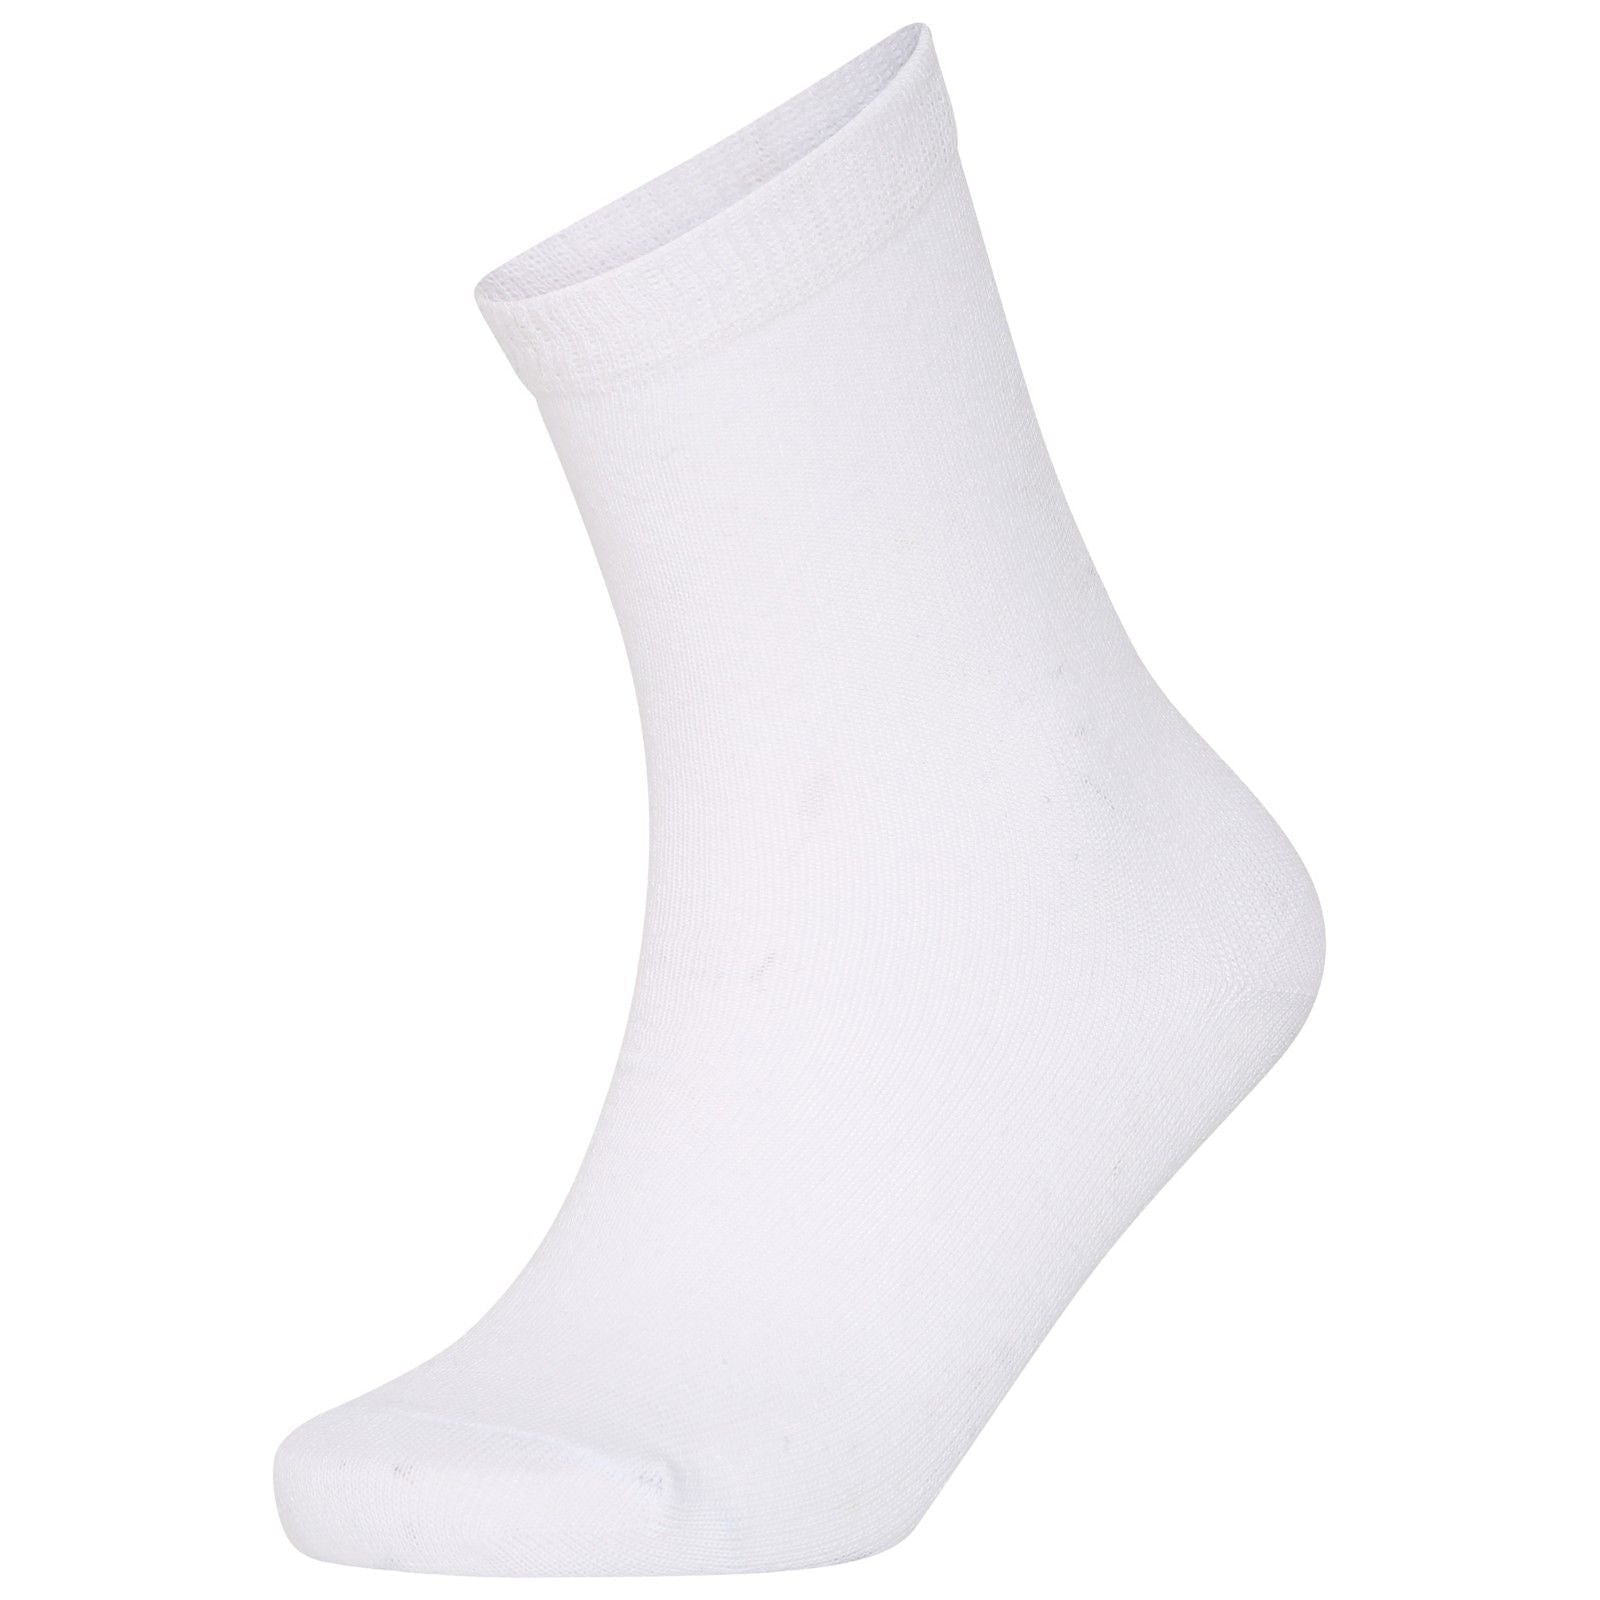 Girls Boys Unisex Children's Kids Ankle Socks Plain Cotton Mix  Back to School Socks 3 Pairs -White